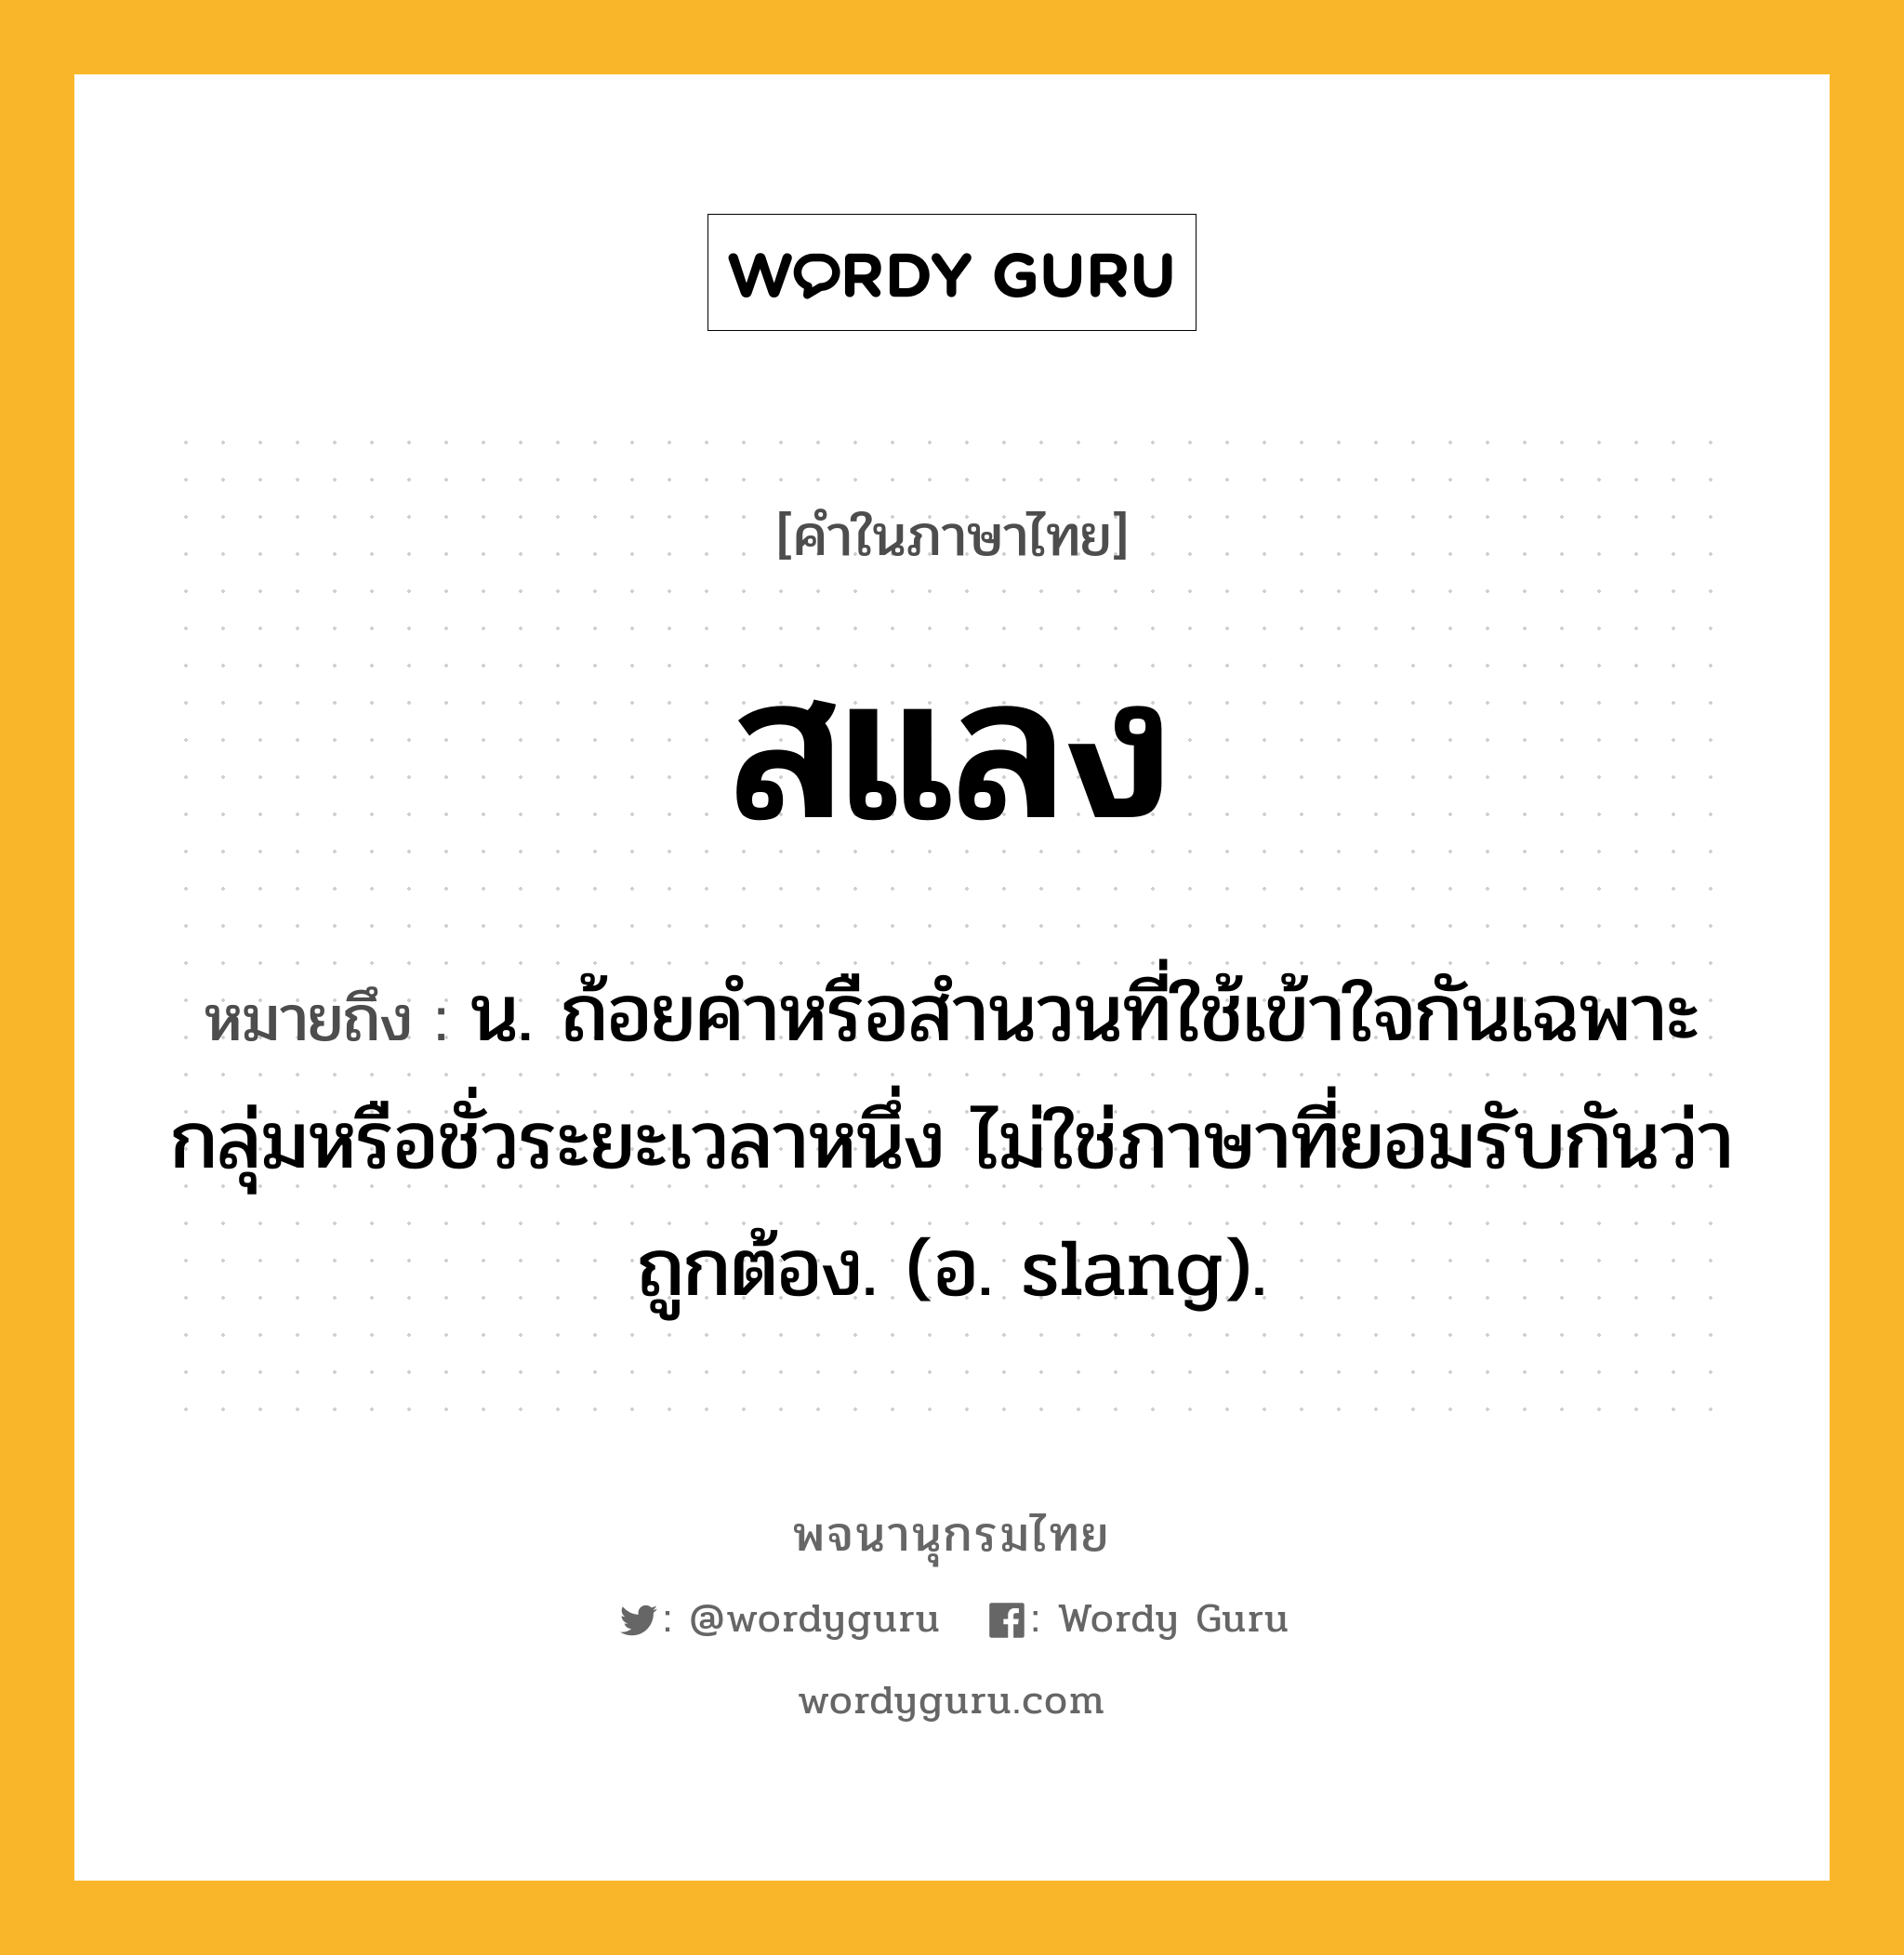 สแลง ความหมาย หมายถึงอะไร?, คำในภาษาไทย สแลง หมายถึง น. ถ้อยคําหรือสํานวนที่ใช้เข้าใจกันเฉพาะกลุ่มหรือชั่วระยะเวลาหนึ่ง ไม่ใช่ภาษาที่ยอมรับกันว่าถูกต้อง. (อ. slang).